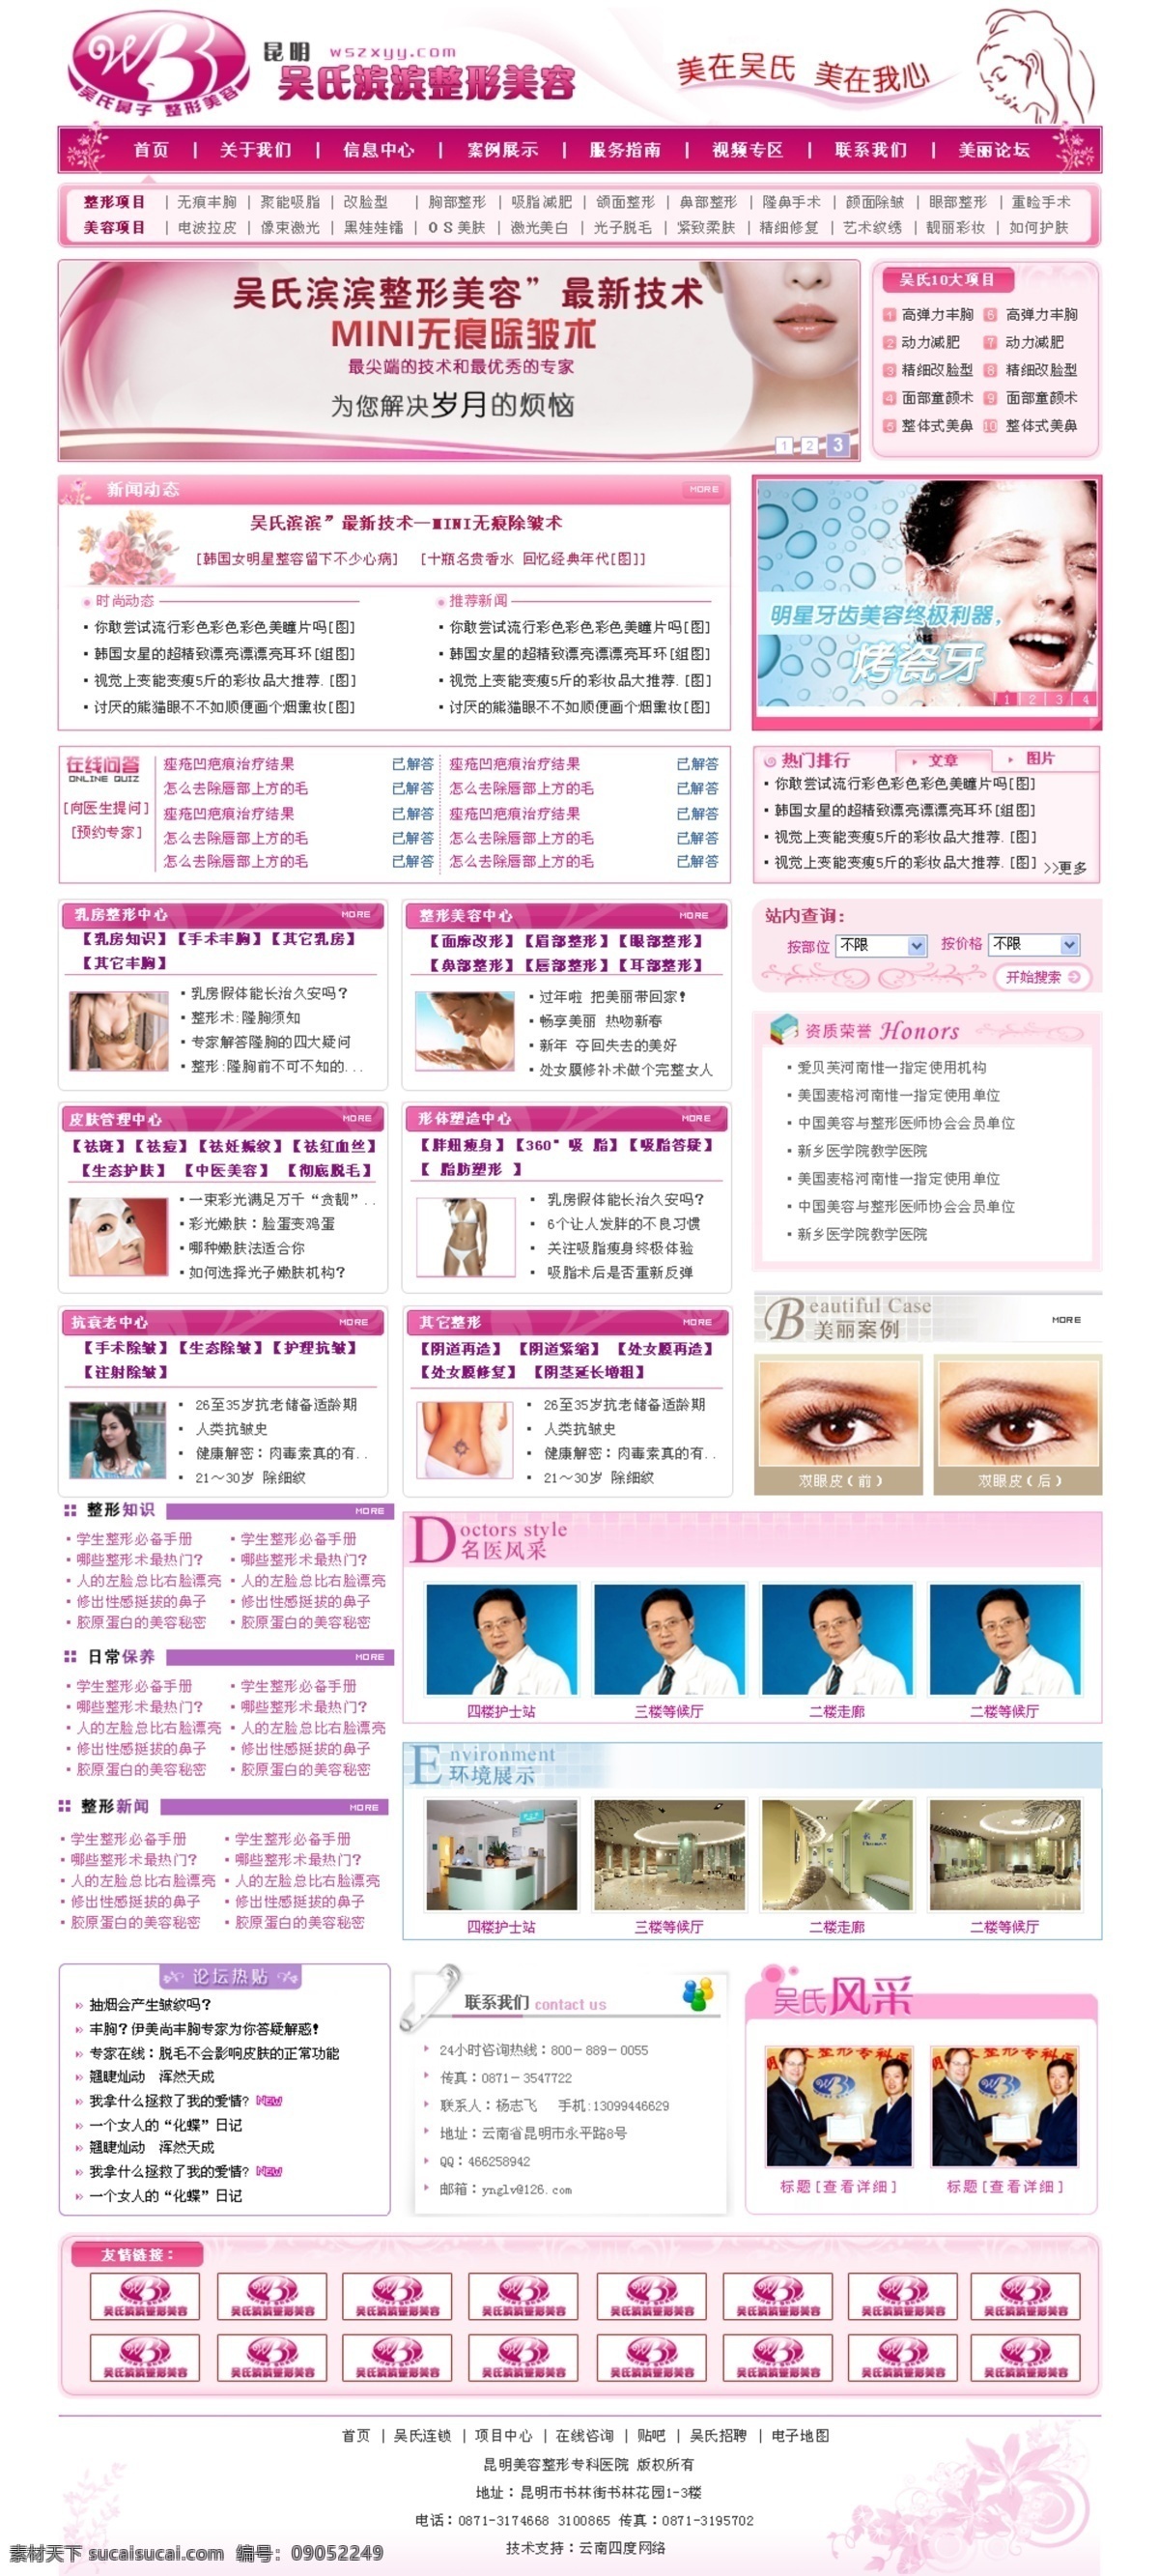 粉红色 整形美容 网页模板 美容 整形 中国风格 粉红色色调 网页素材